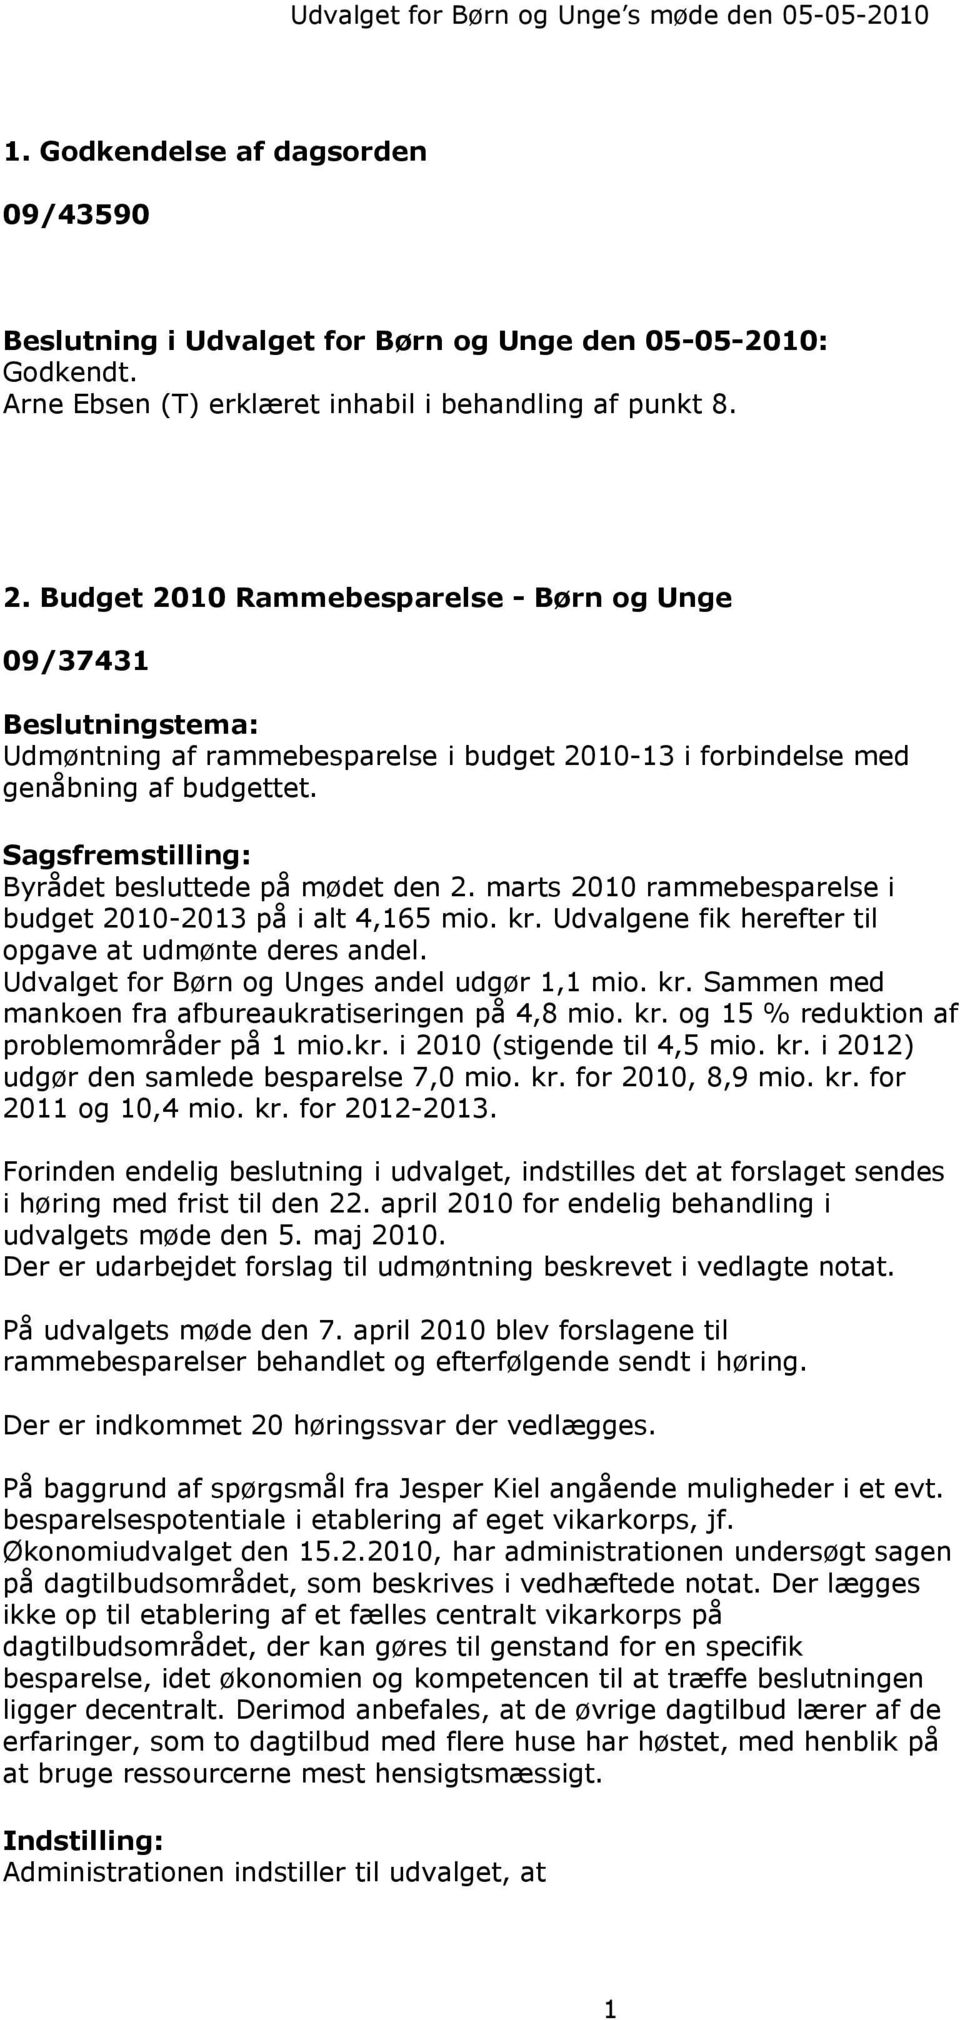 Budget 2010 Rammebesparelse - Børn og Unge 09/37431 Beslutningstema: Udmøntning af rammebesparelse i budget 2010-13 i forbindelse med genåbning af budgettet.